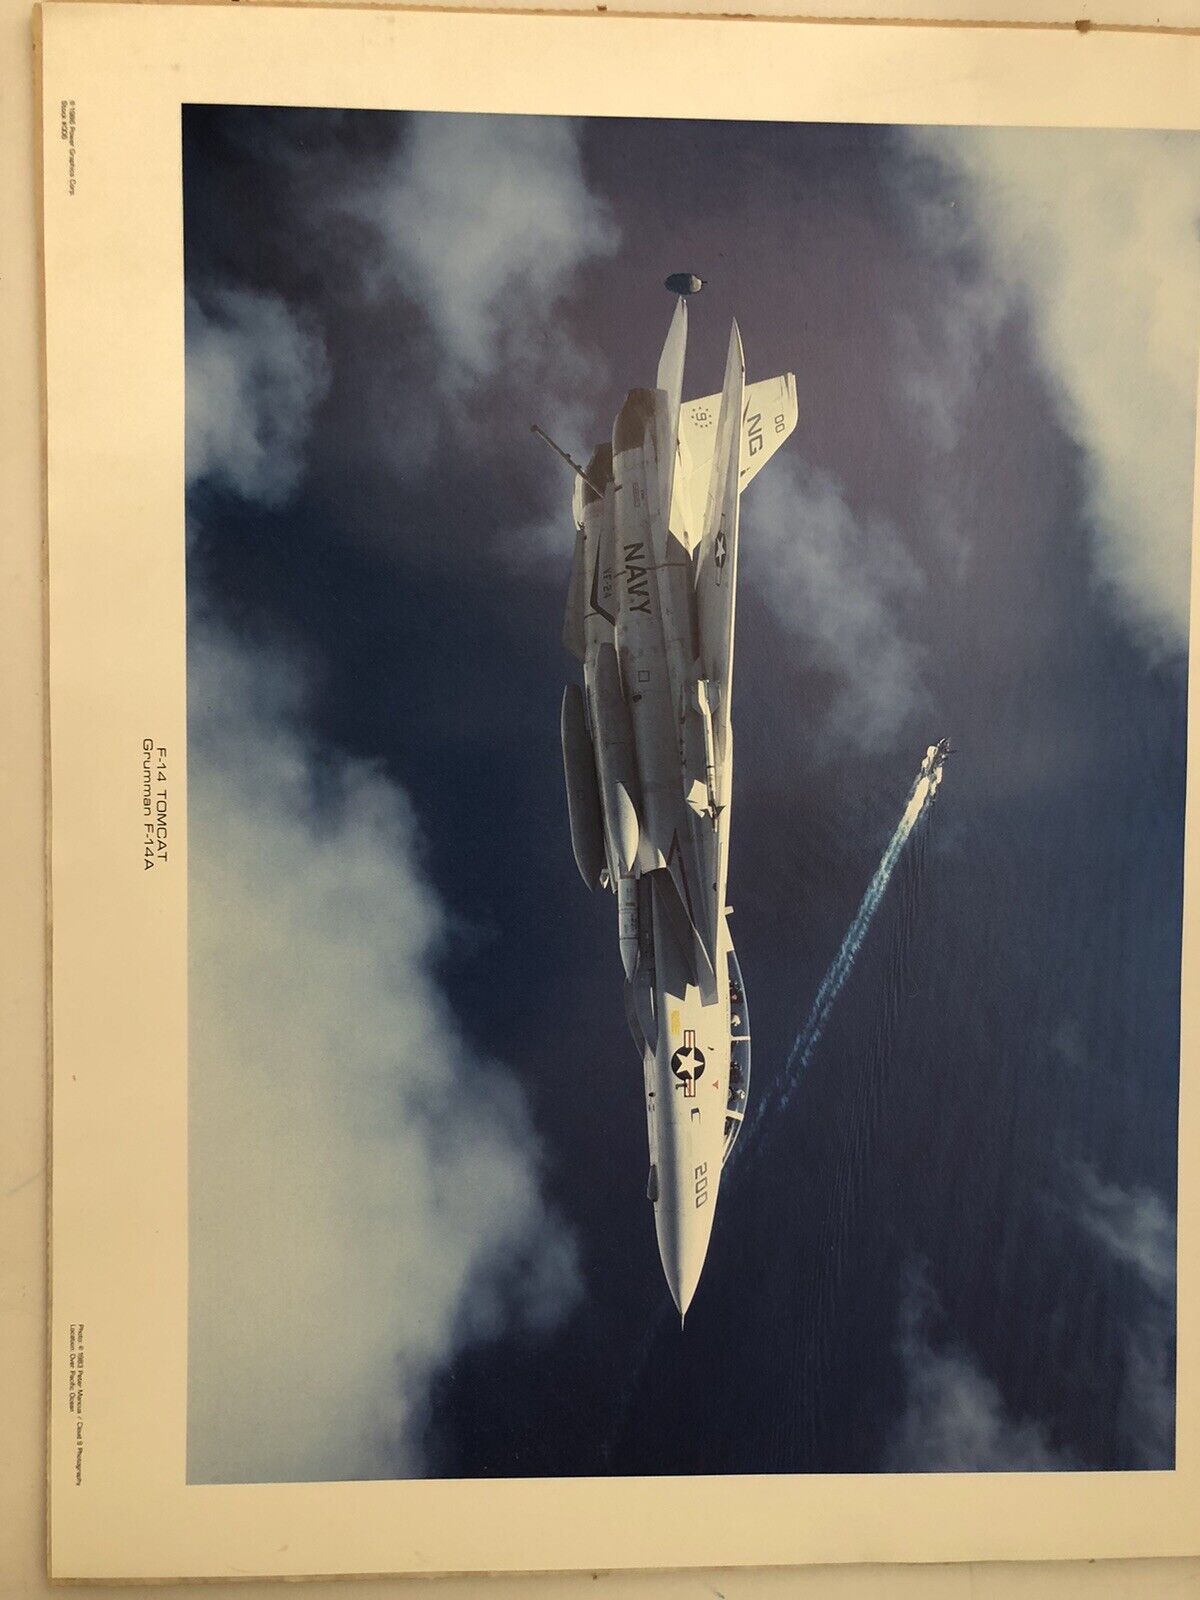 16 x 20 photo of F – 14 TOMCAT F-14 A 1983